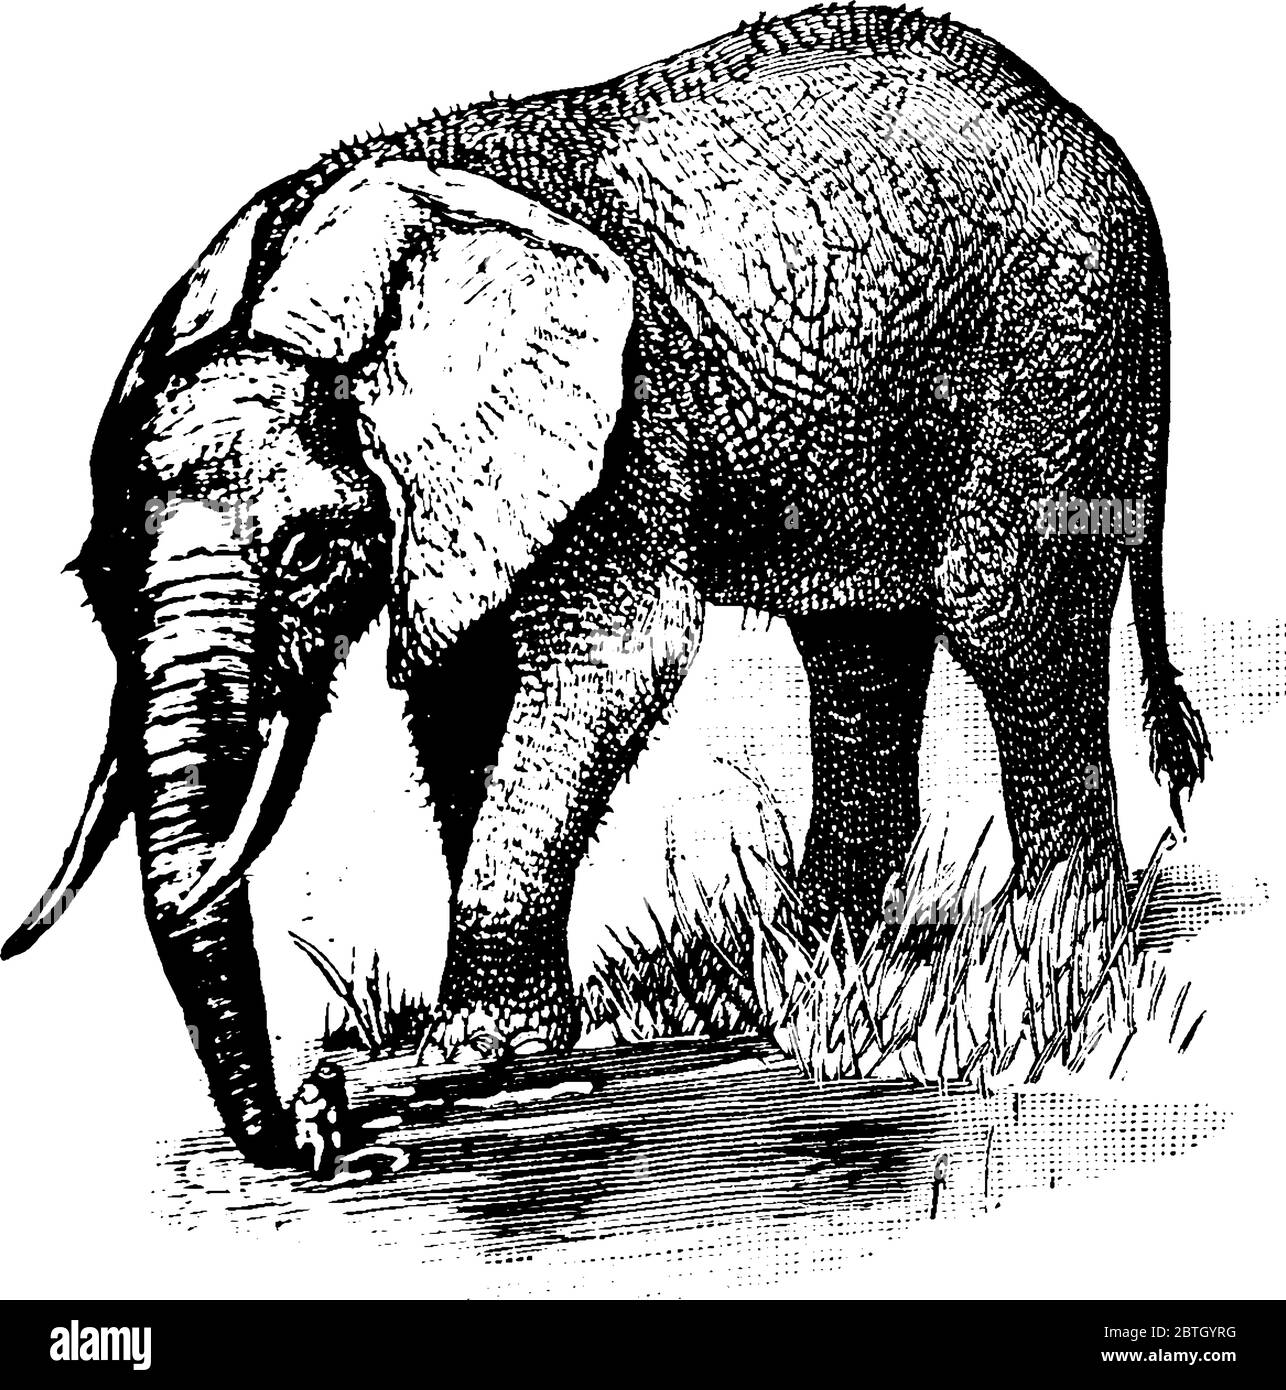 Un'illustrazione dell'Elefante Africano, la specie più grande di Loxodonta, disegno di linea d'annata o illustrazione di incisione. Illustrazione Vettoriale